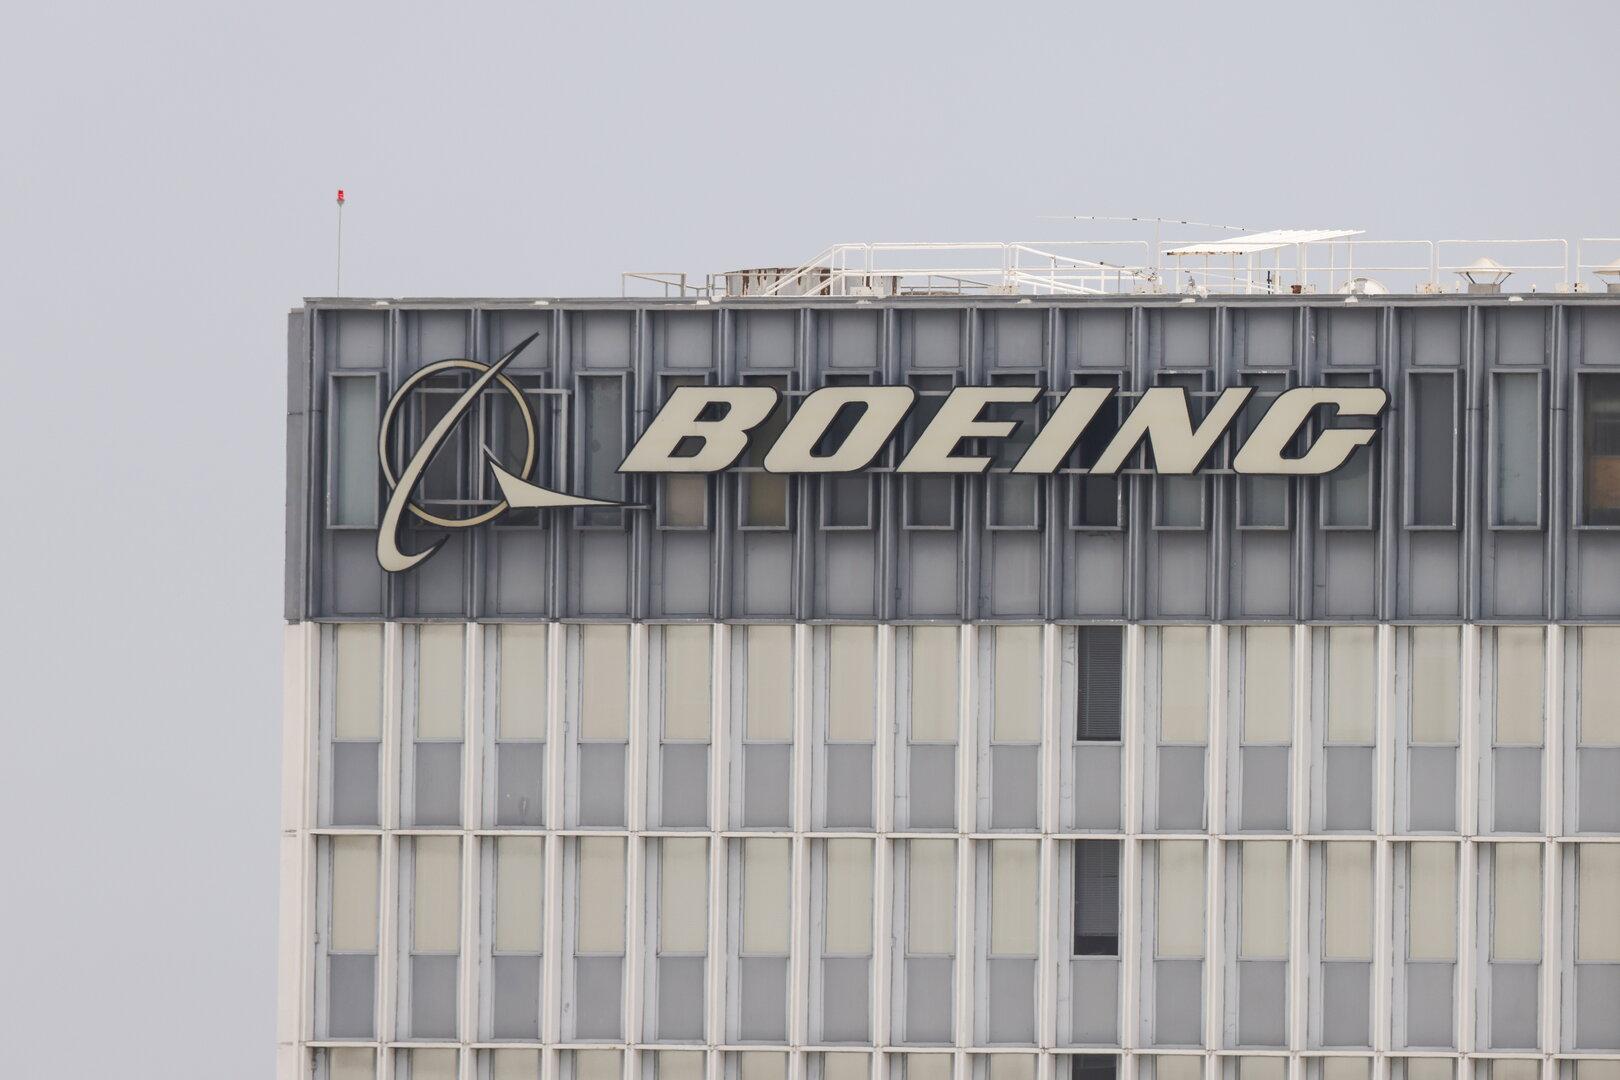 Pannenserie geht weiter: Boeing-Flugzeug verlor nach Start ein Rad